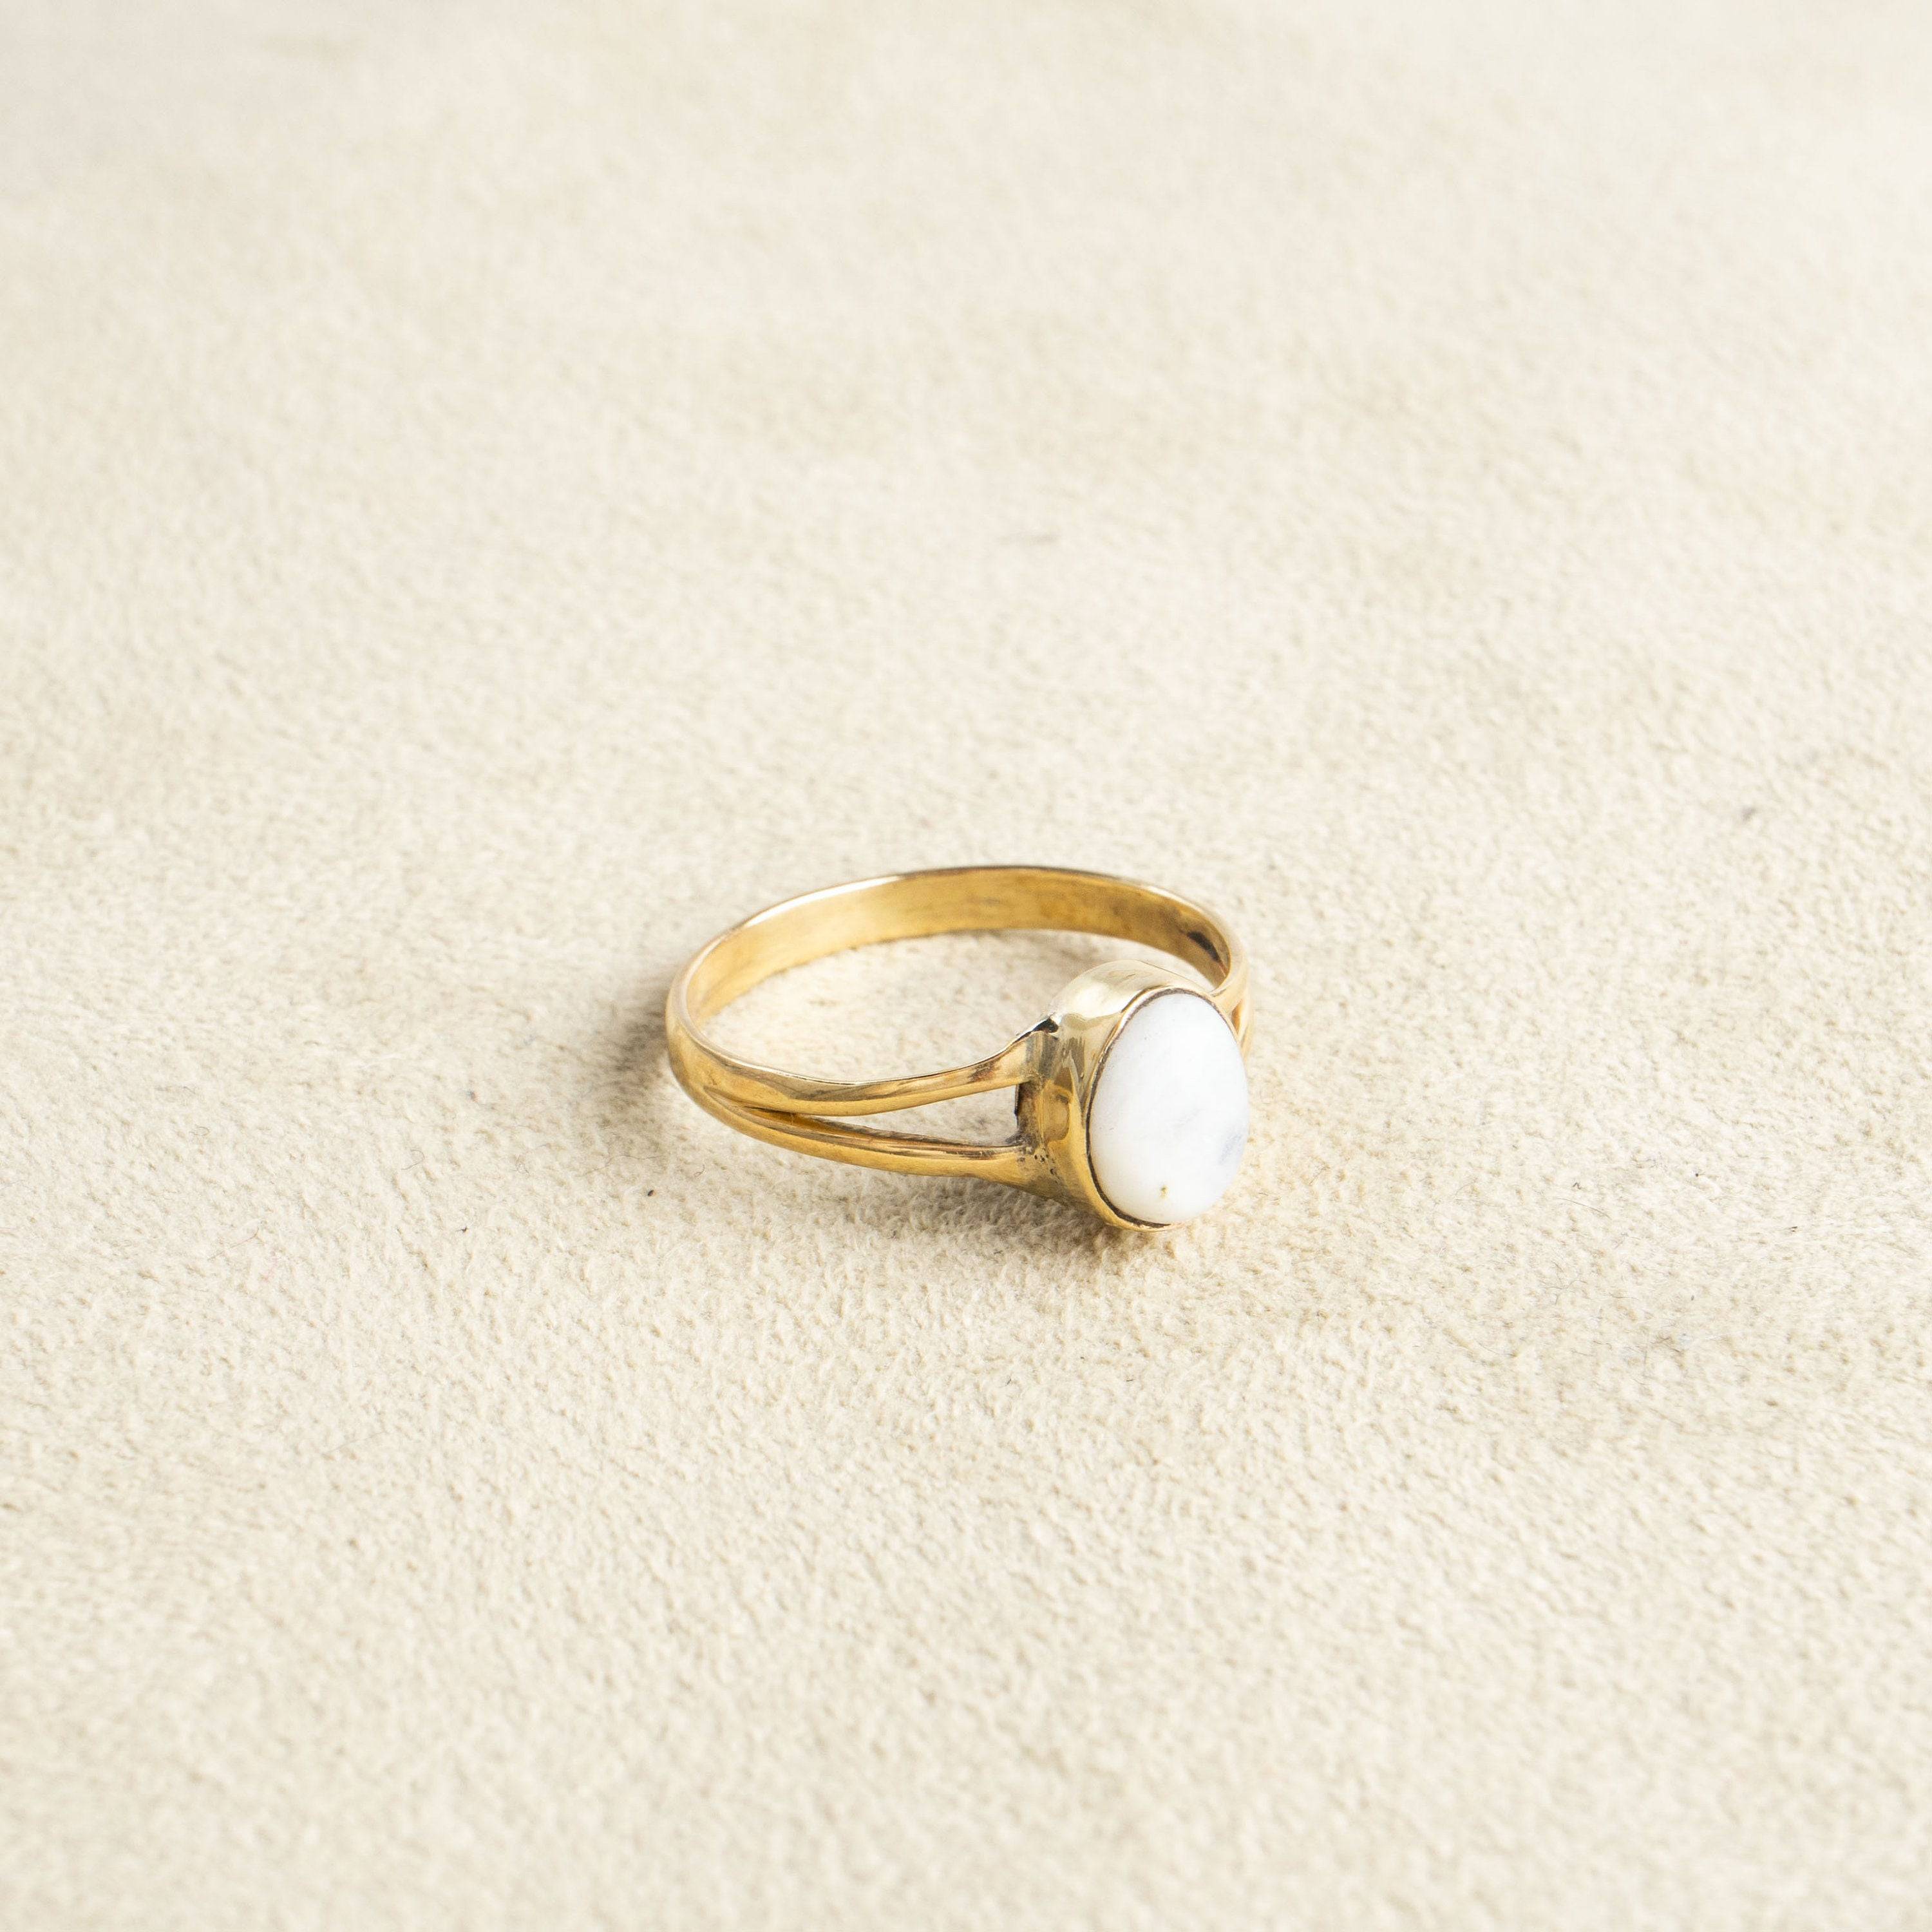 Kleiner Mondstein Ring mit ovalem Stein handgemacht - NooeBerlin